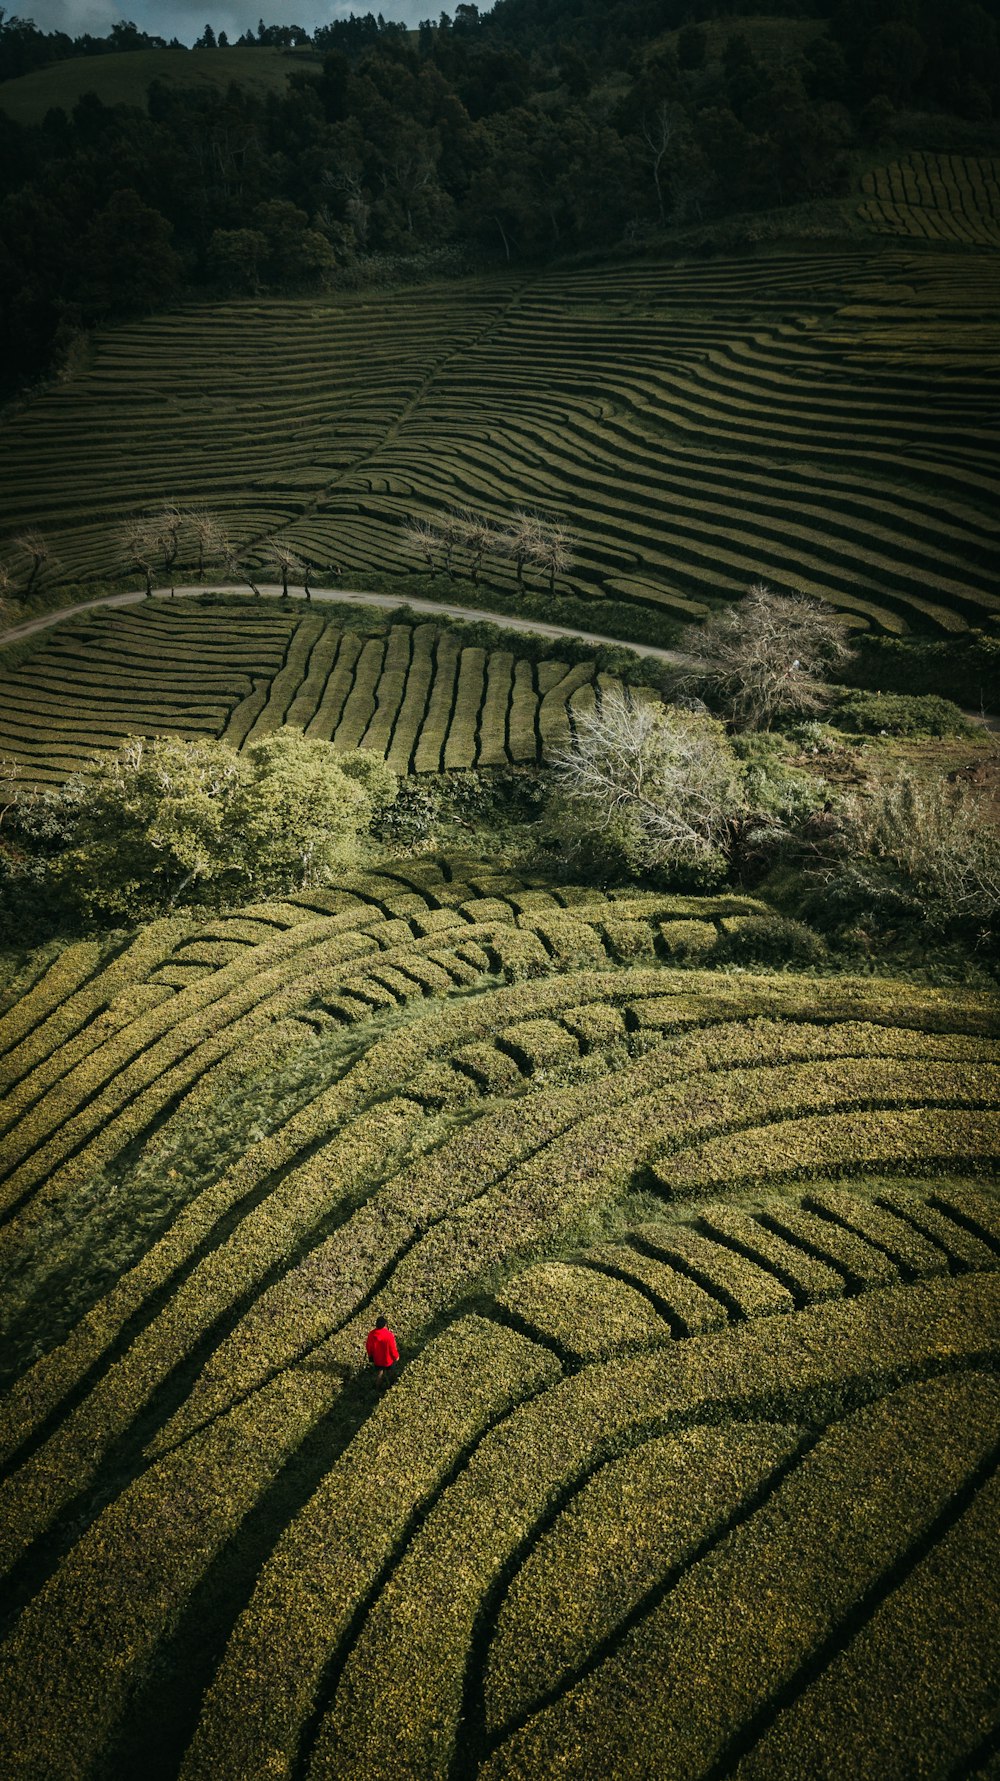 Person in roter Jacke, die tagsüber auf grünem Rasen steht